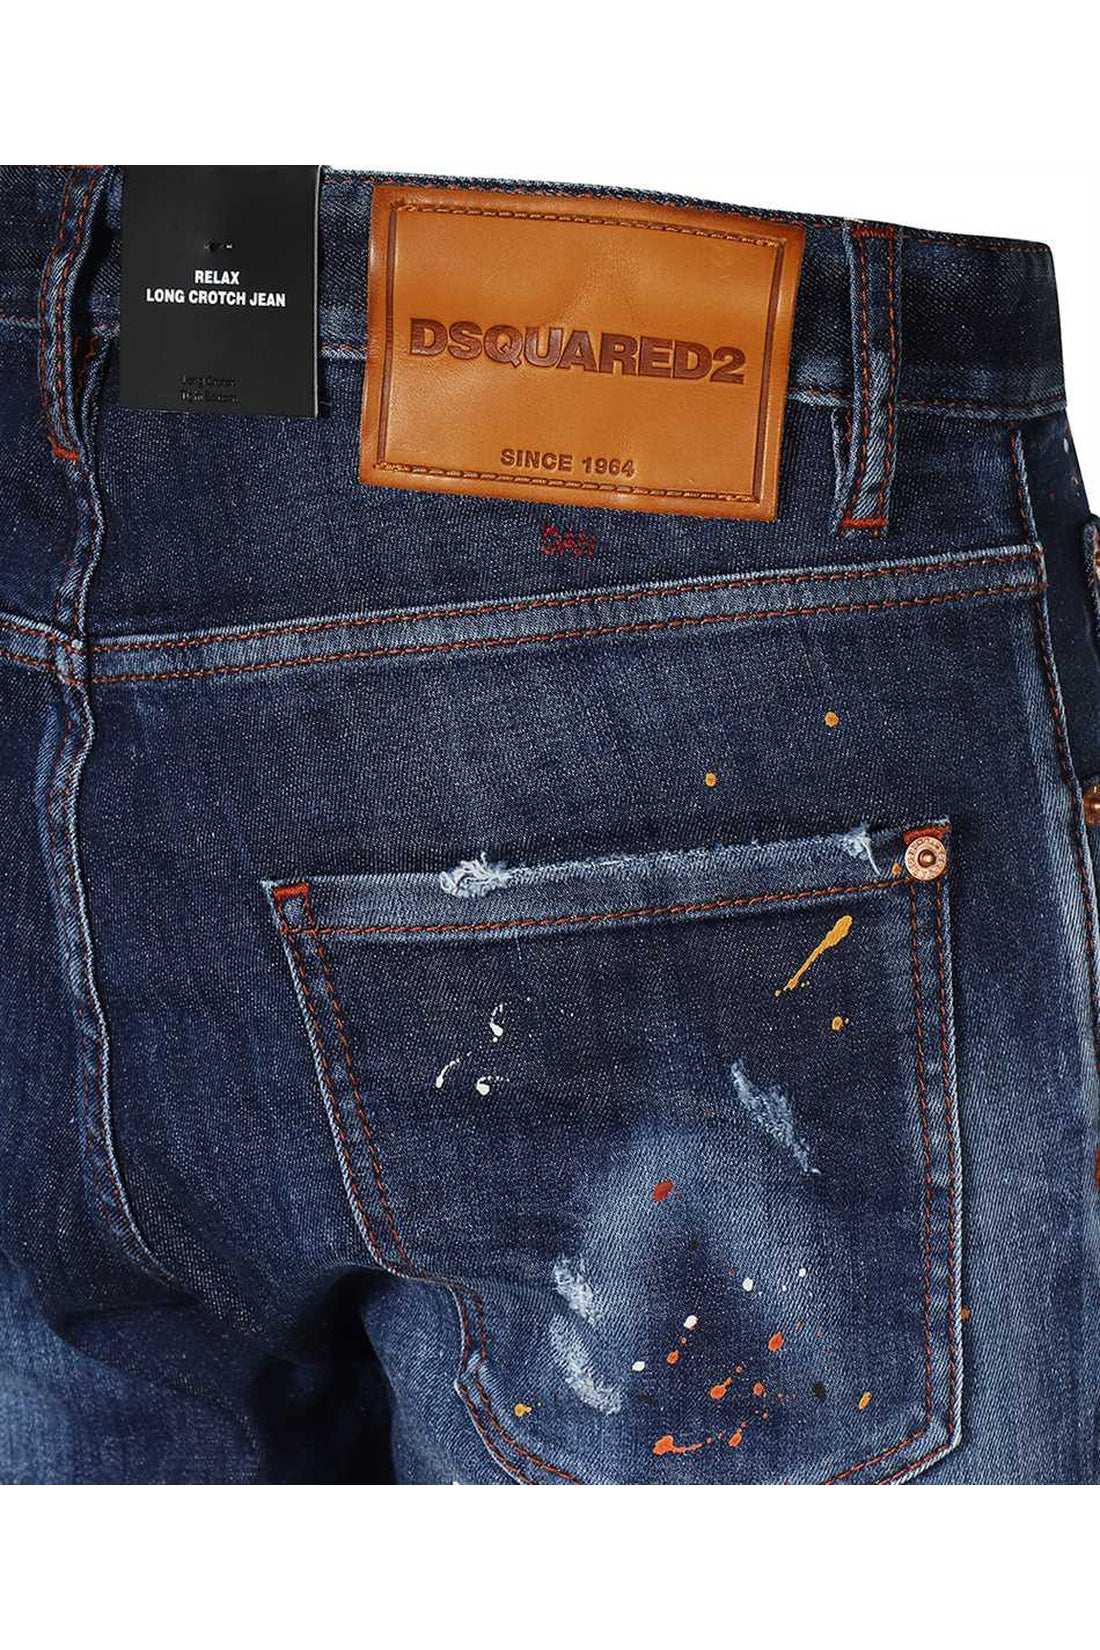 Dsquared2-OUTLET-SALE-5-pocket jeans-ARCHIVIST